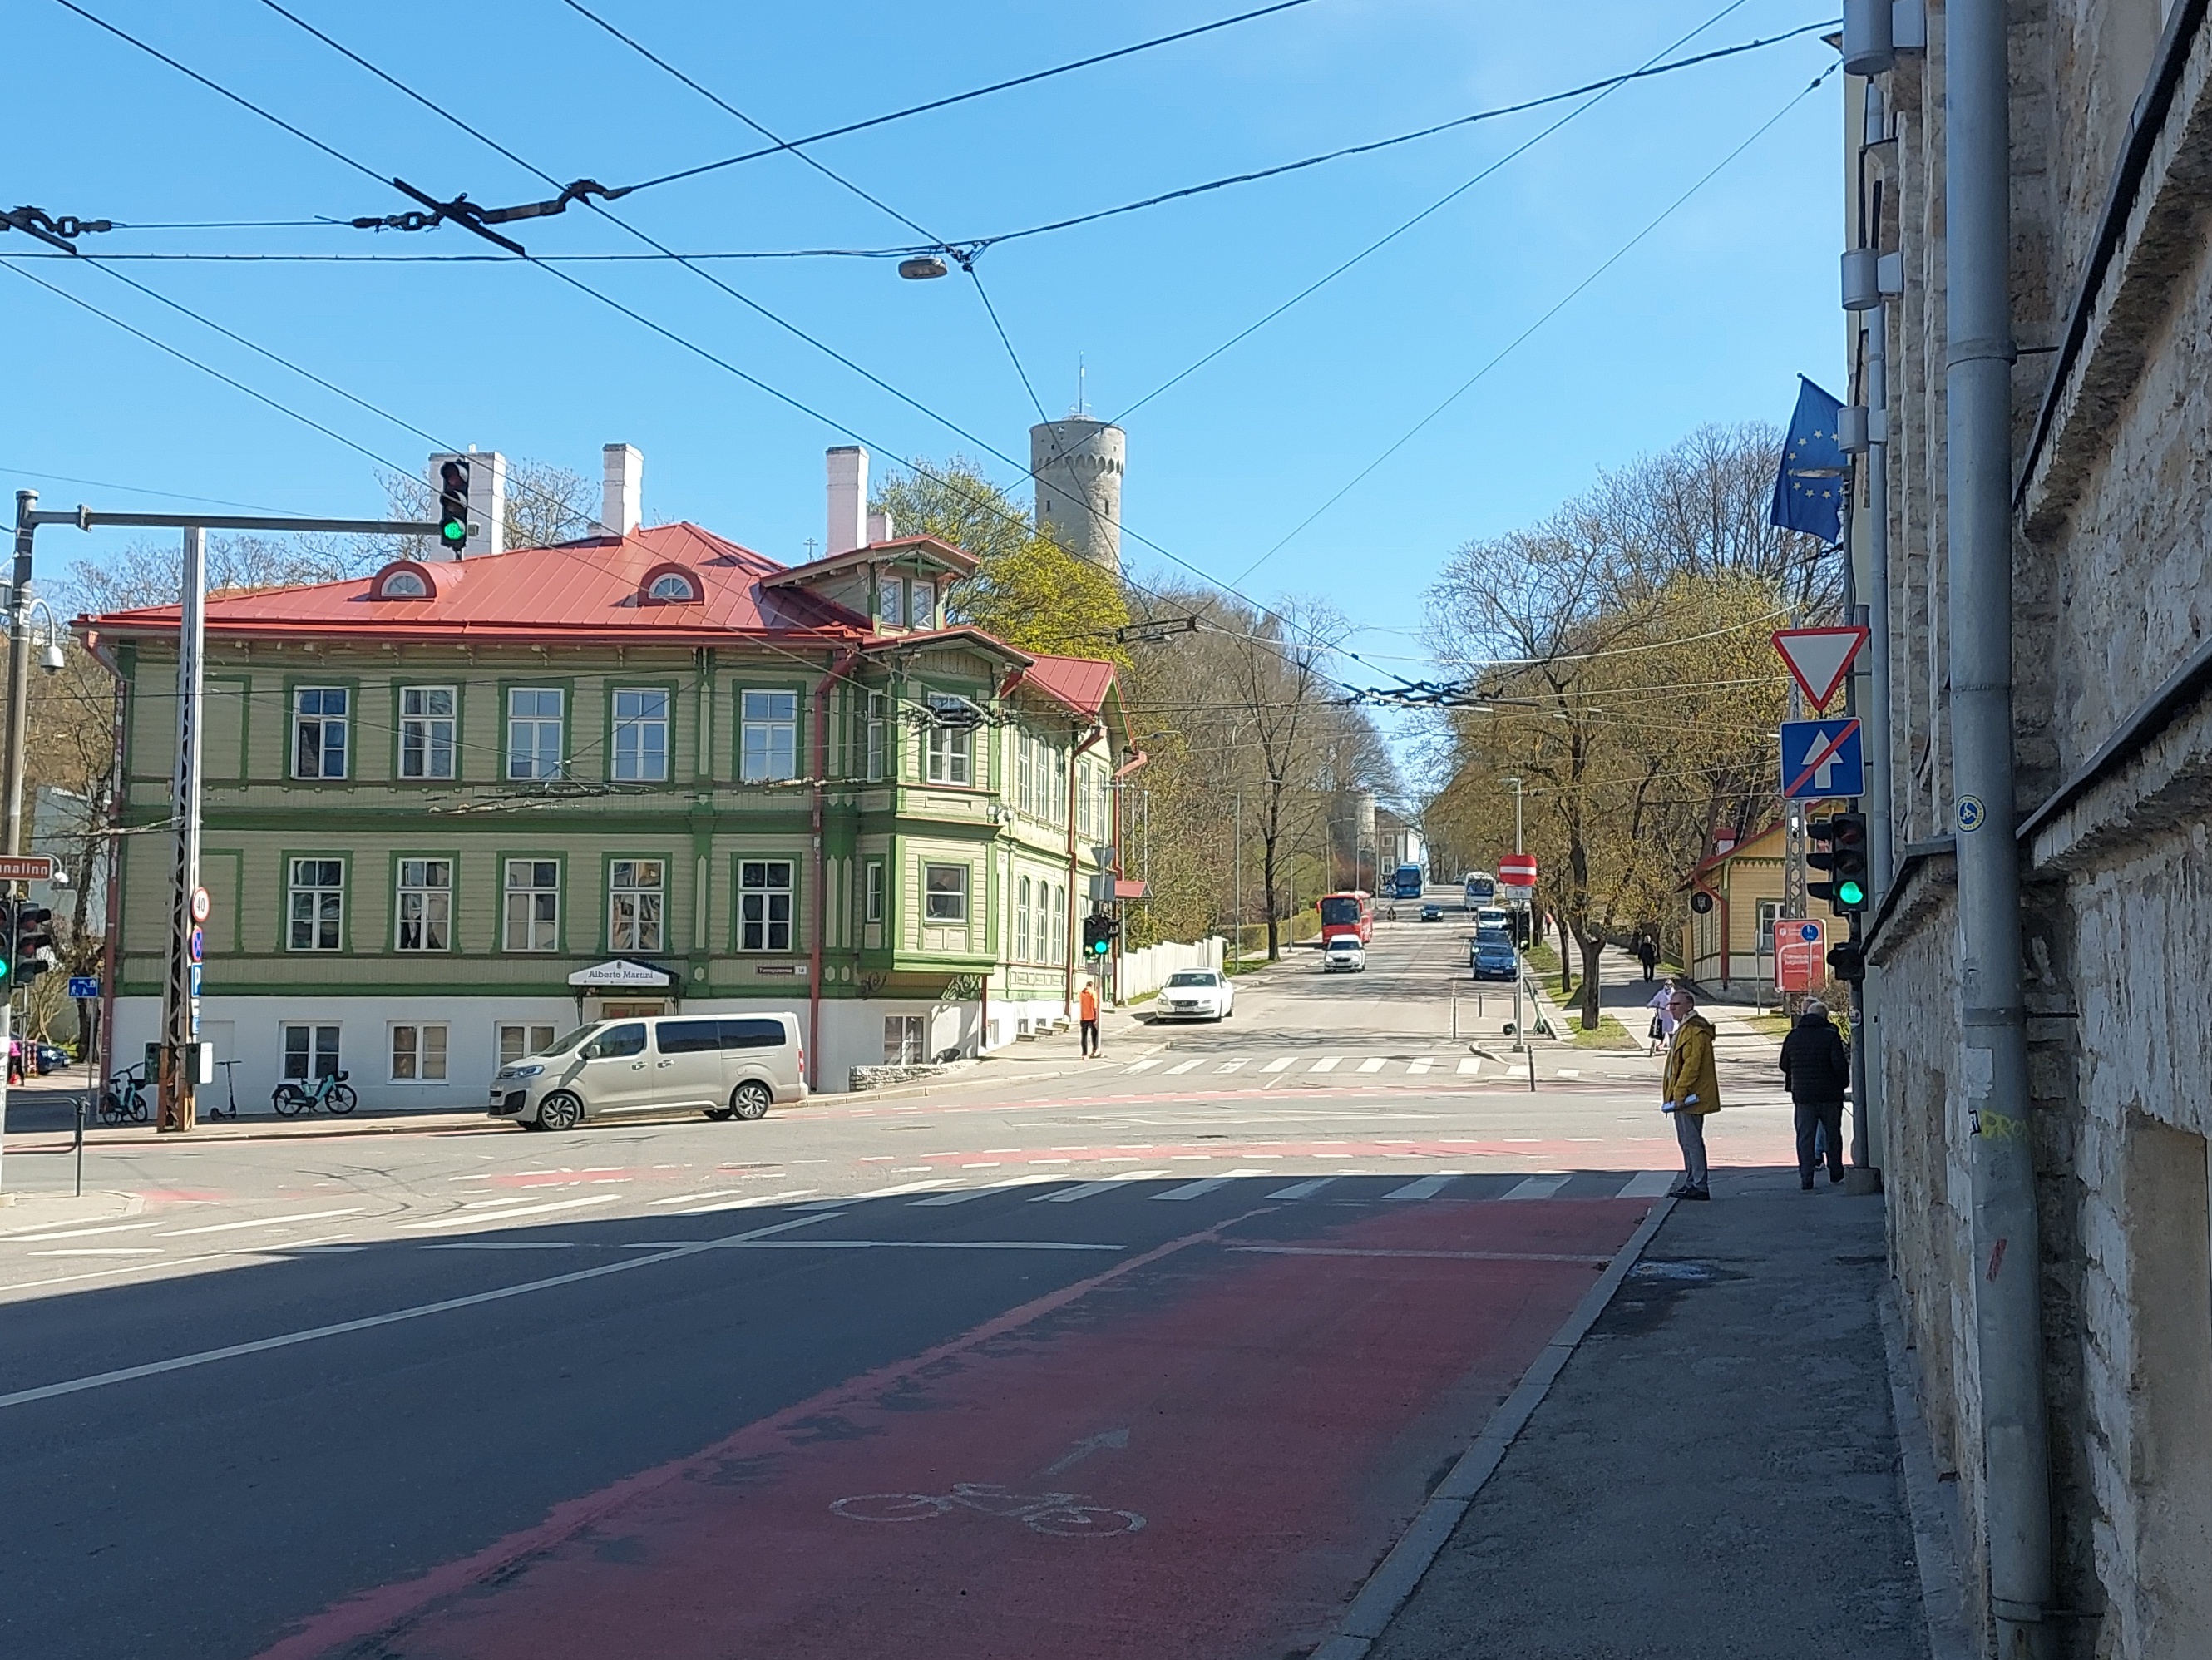 Vaade Nõukogude tänavalt hotellile "Tallinn". rephoto